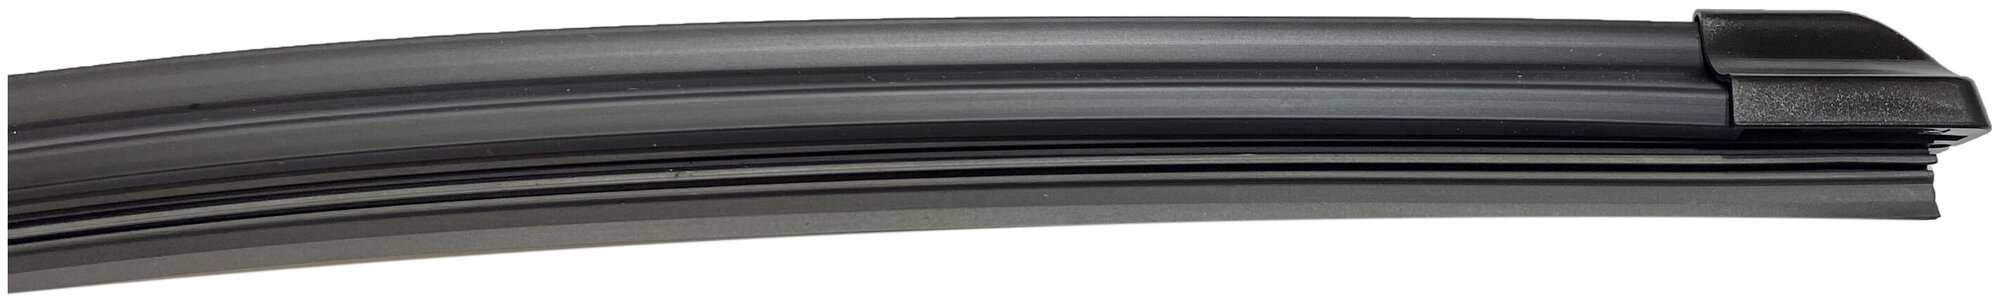 Щетки стеклоочистителя бескаркасные для Lada Niva 1980-2021 (400 мм-400 мм) комплект - 2шт.